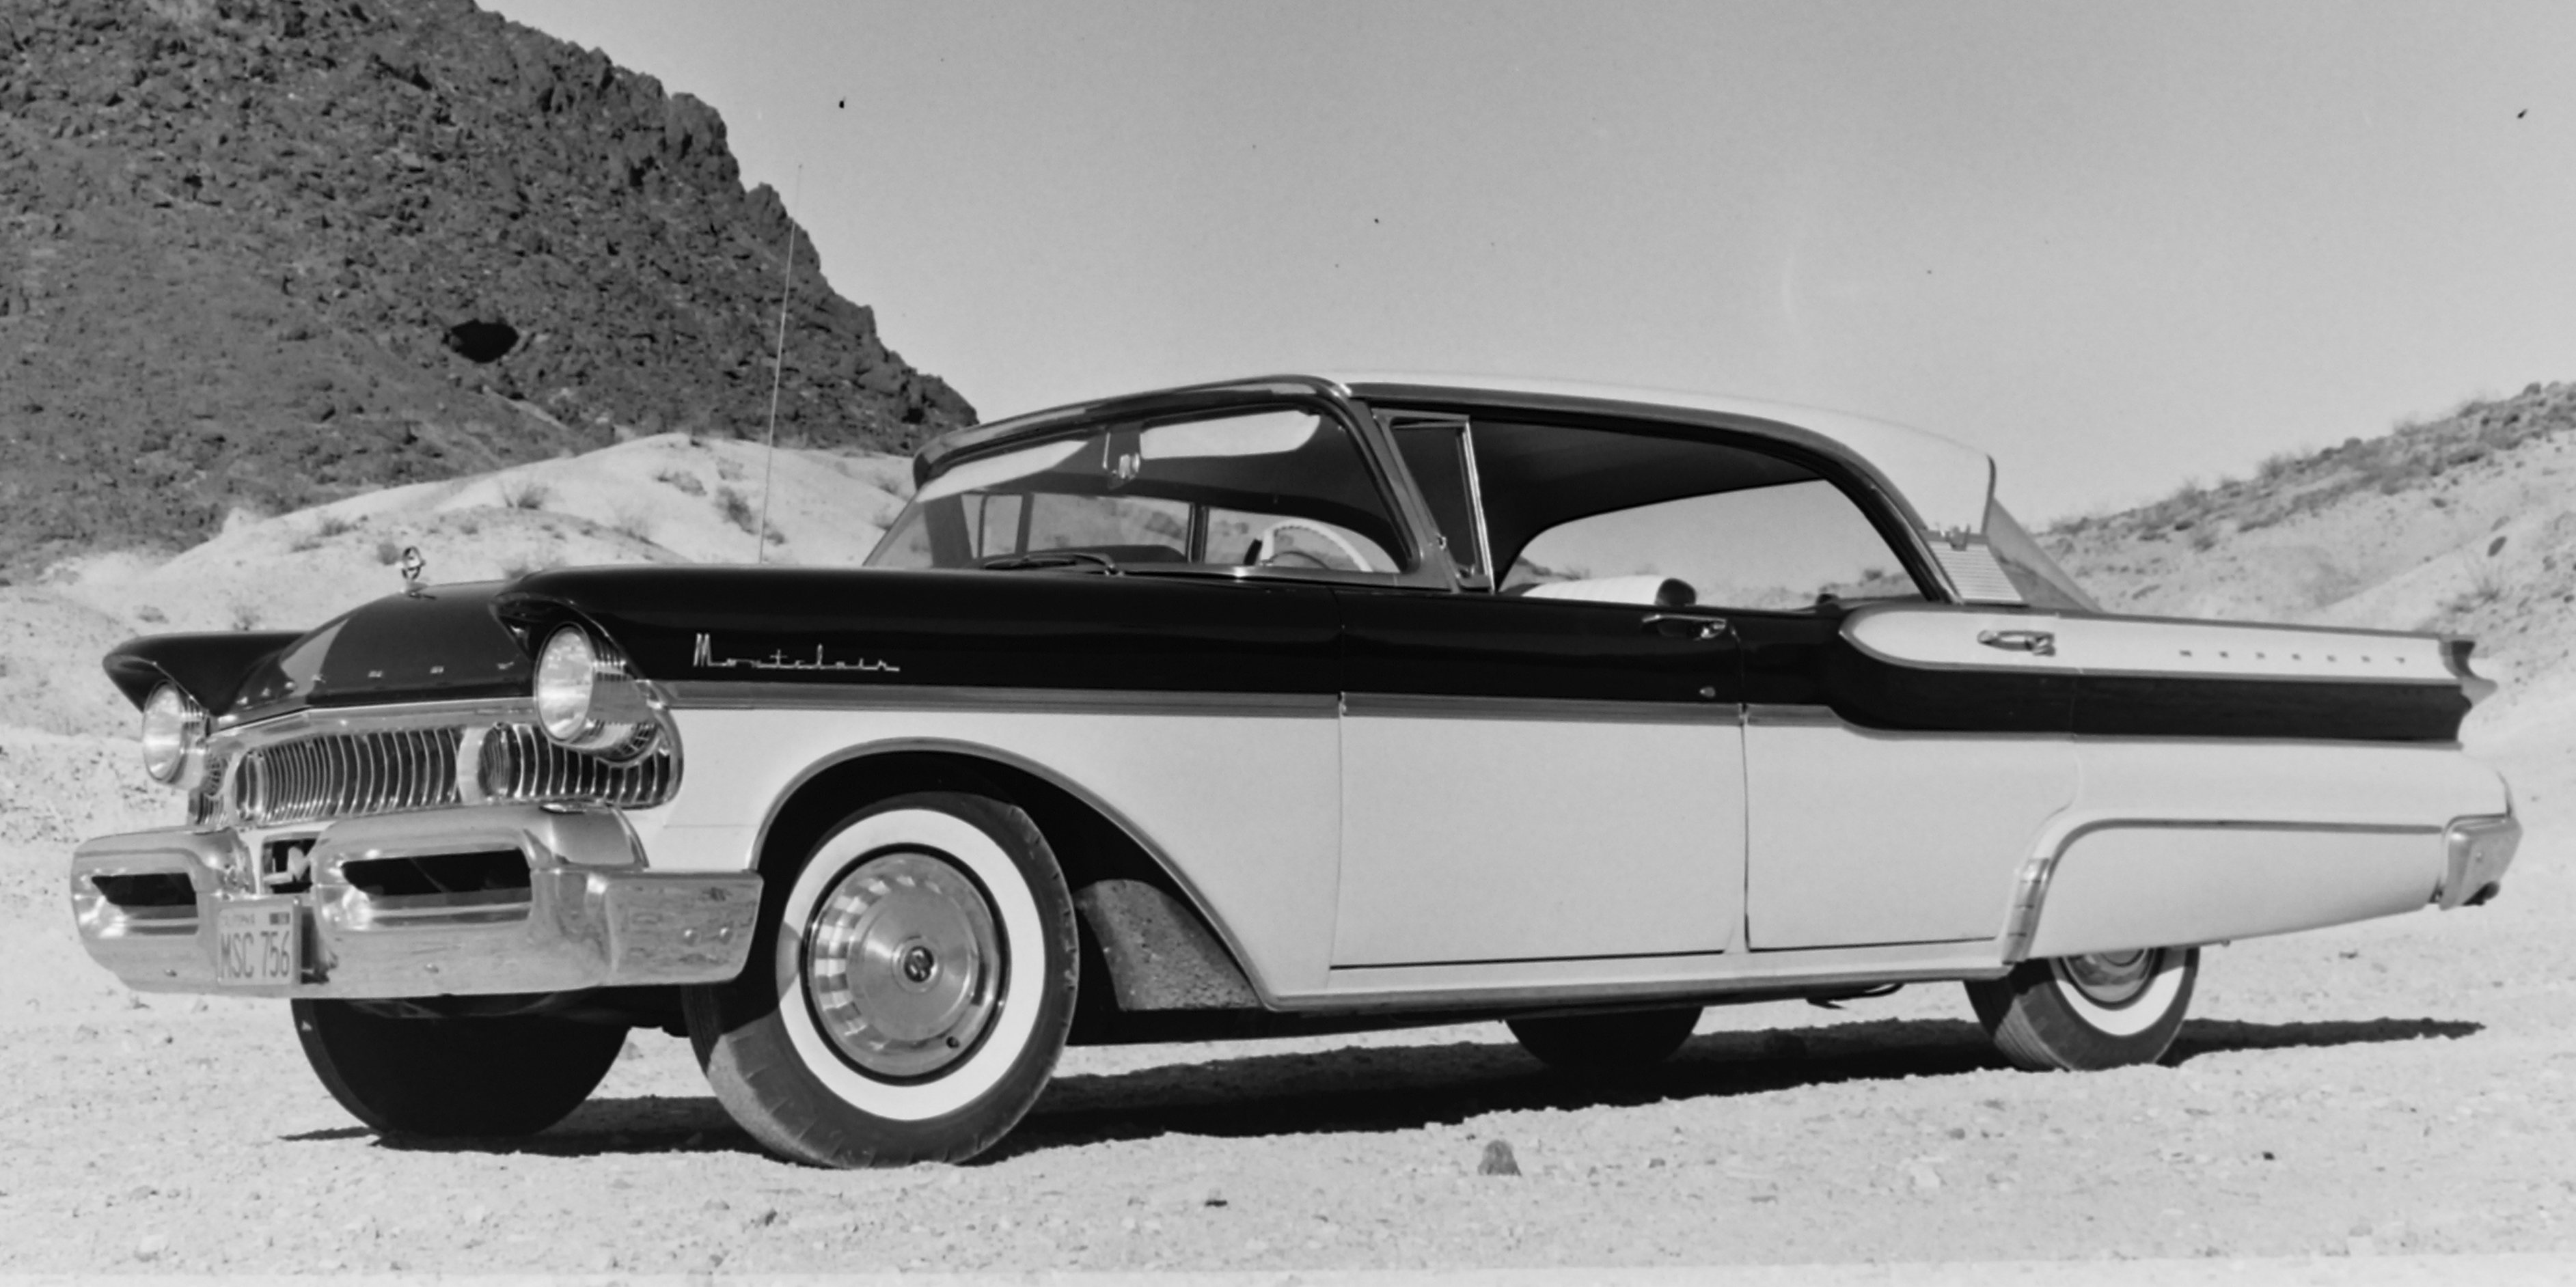 1957 Mercury Montclair Pheaton Coupe